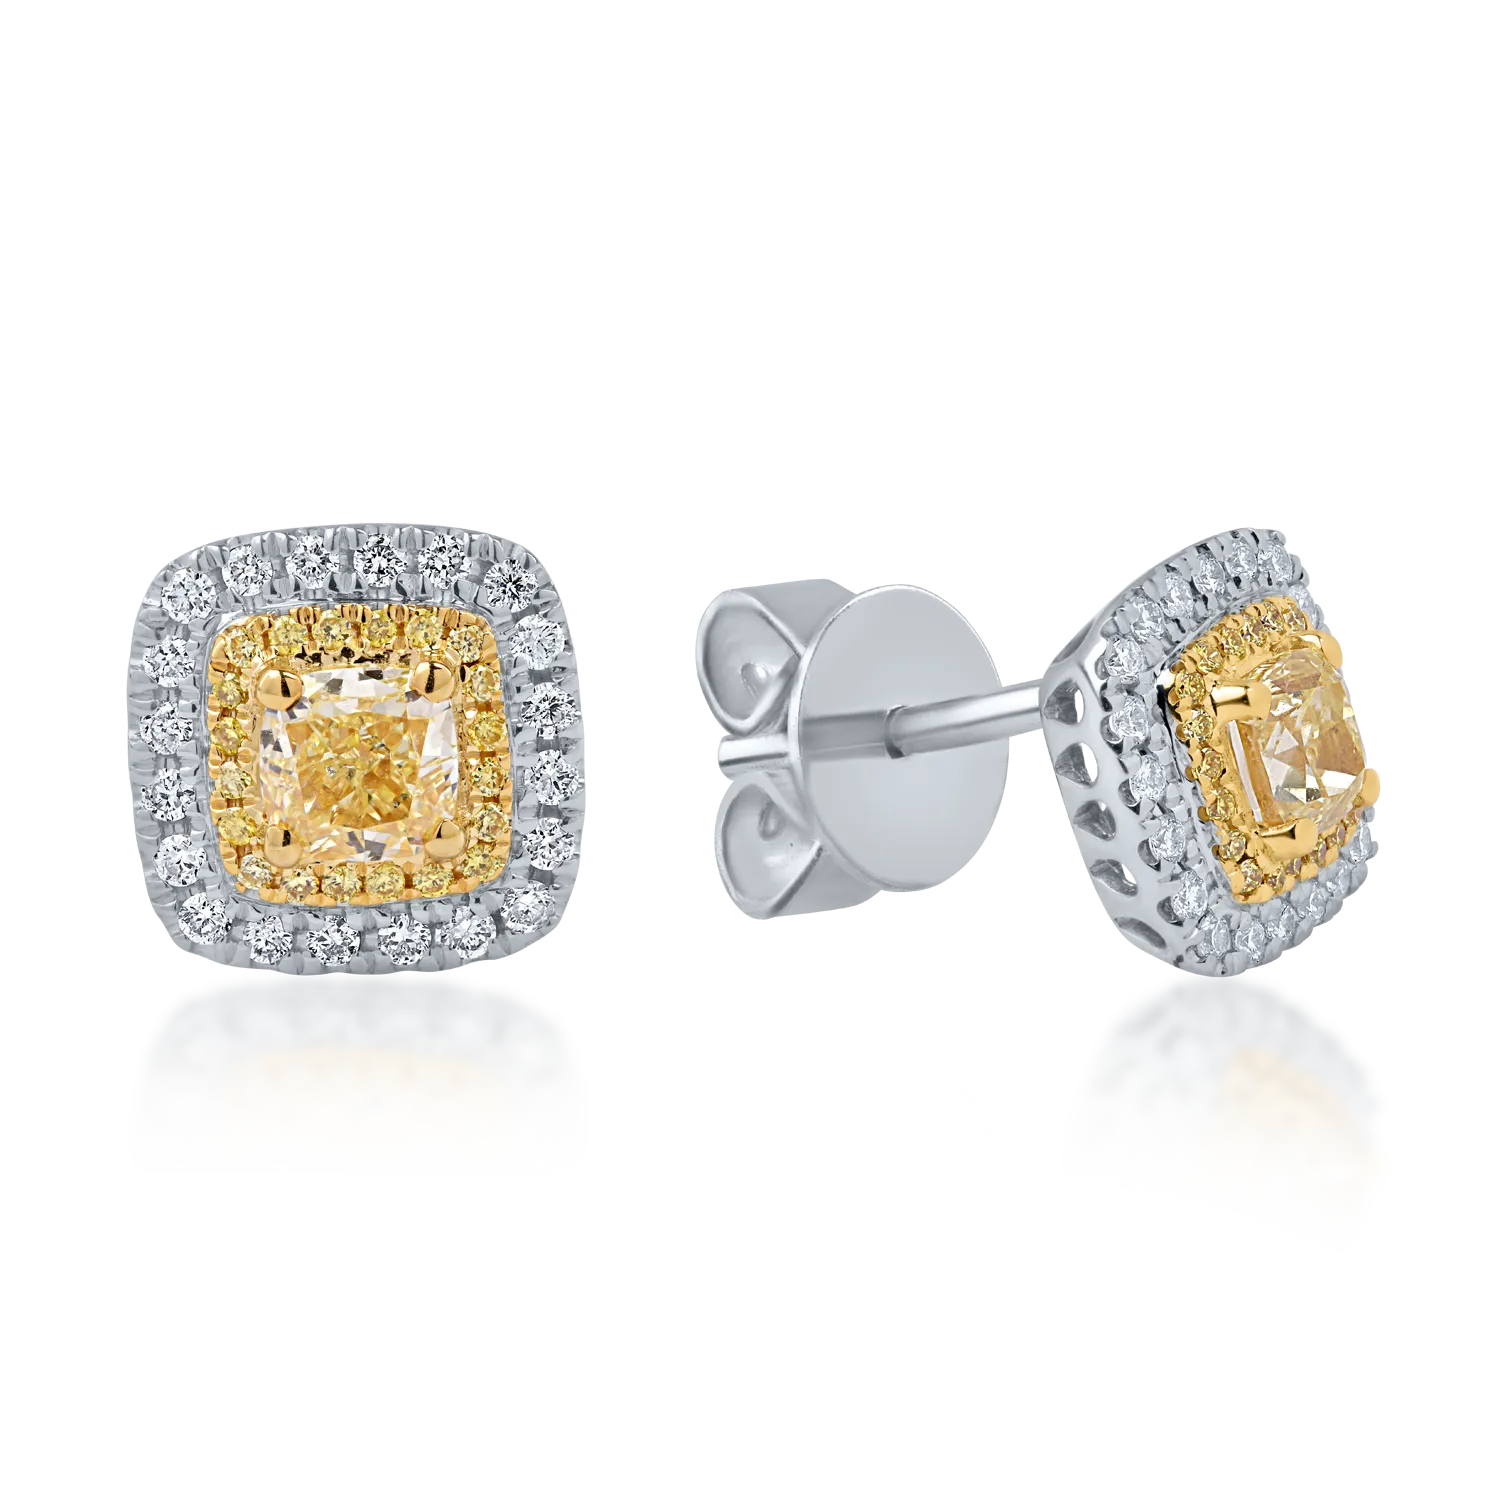 Fehér-sárga arany fülbevaló 1.13ct sárga gyémántokkal és 0.26ct tiszta gyémántokkal